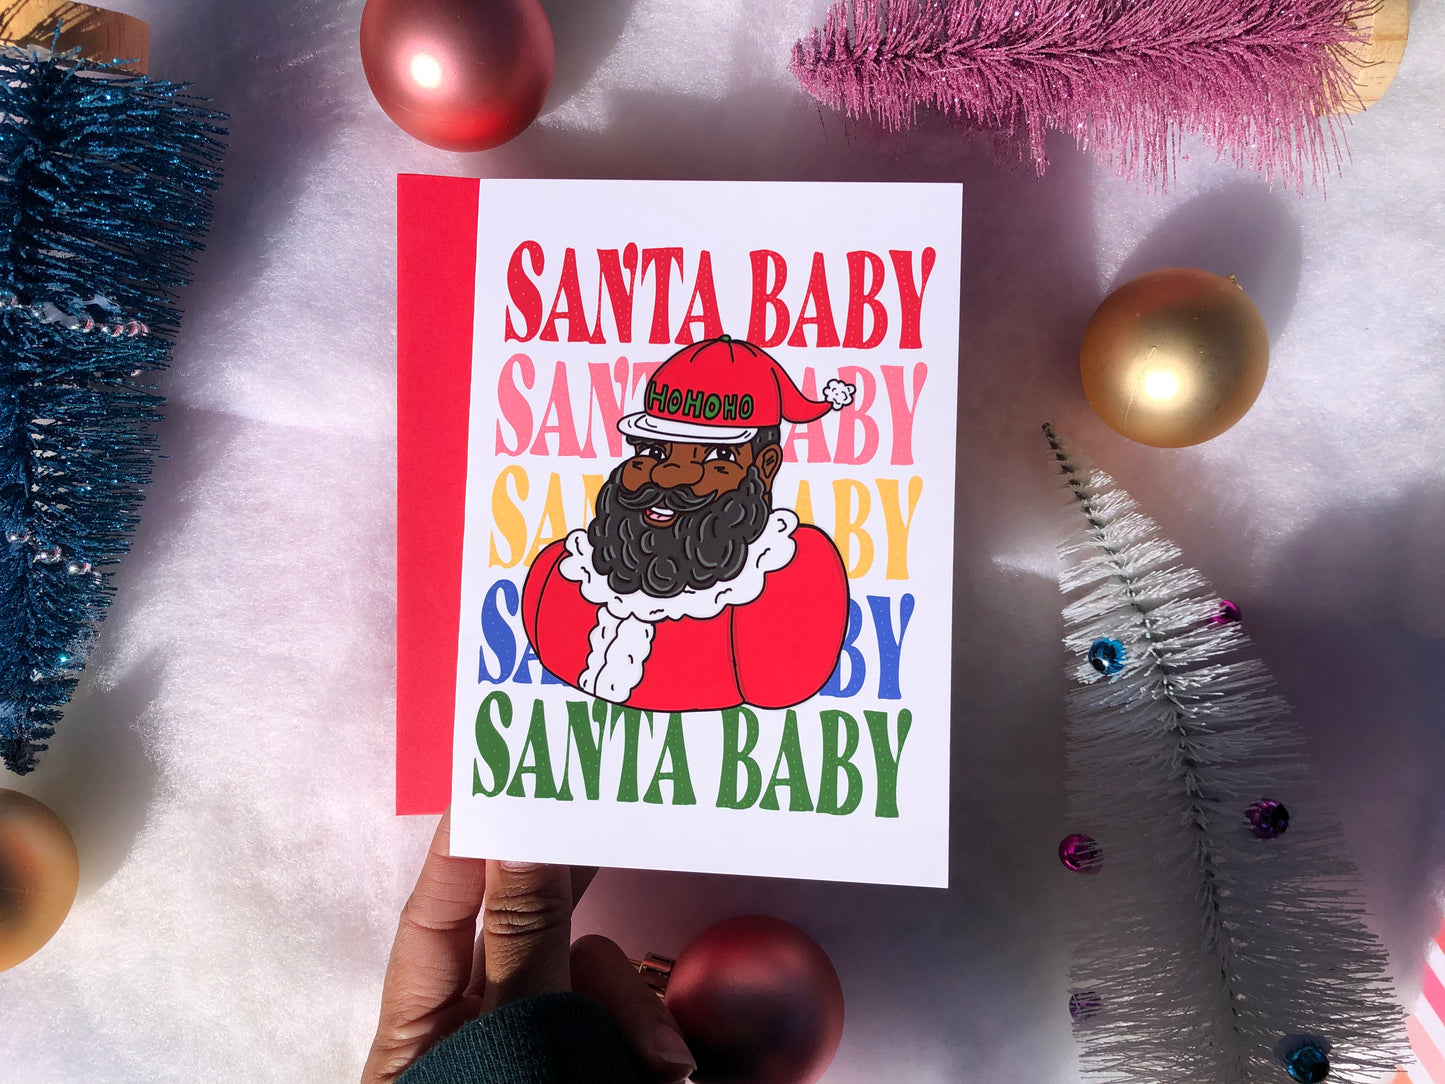 Santa Baby Greeting Card